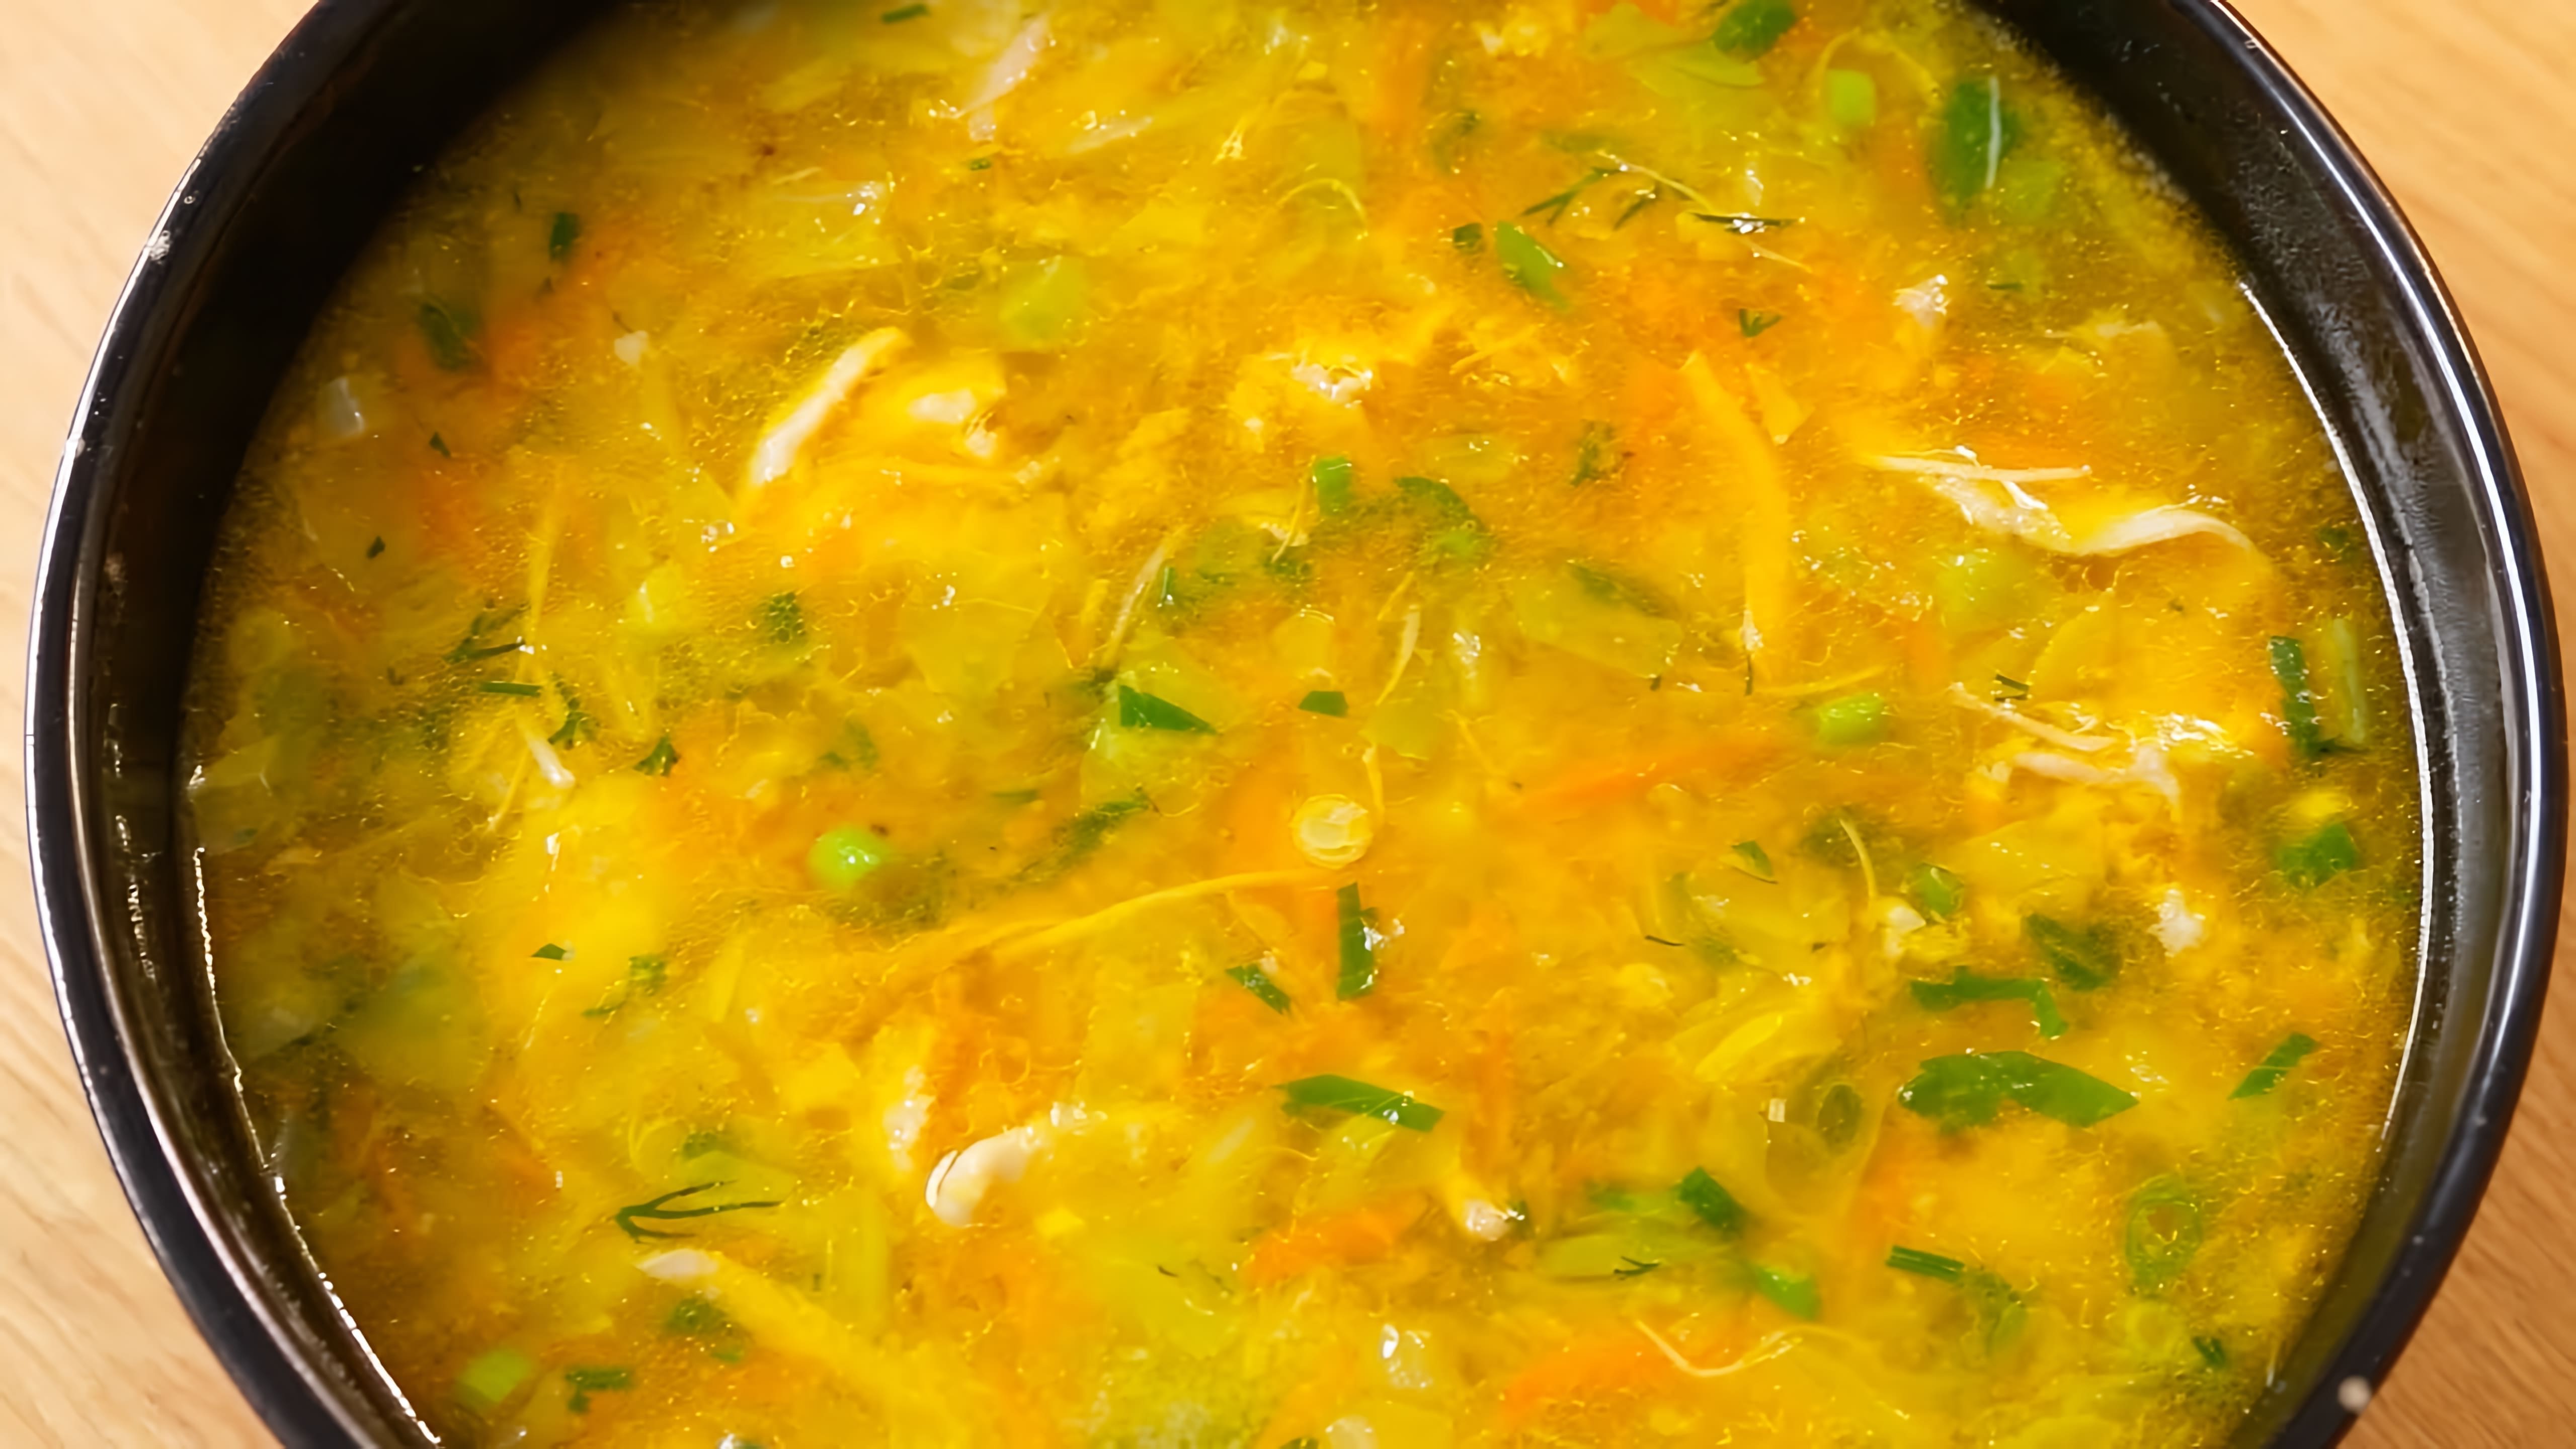 В этом видео демонстрируется процесс приготовления супа из курицы с секретным ингредиентом - манкой